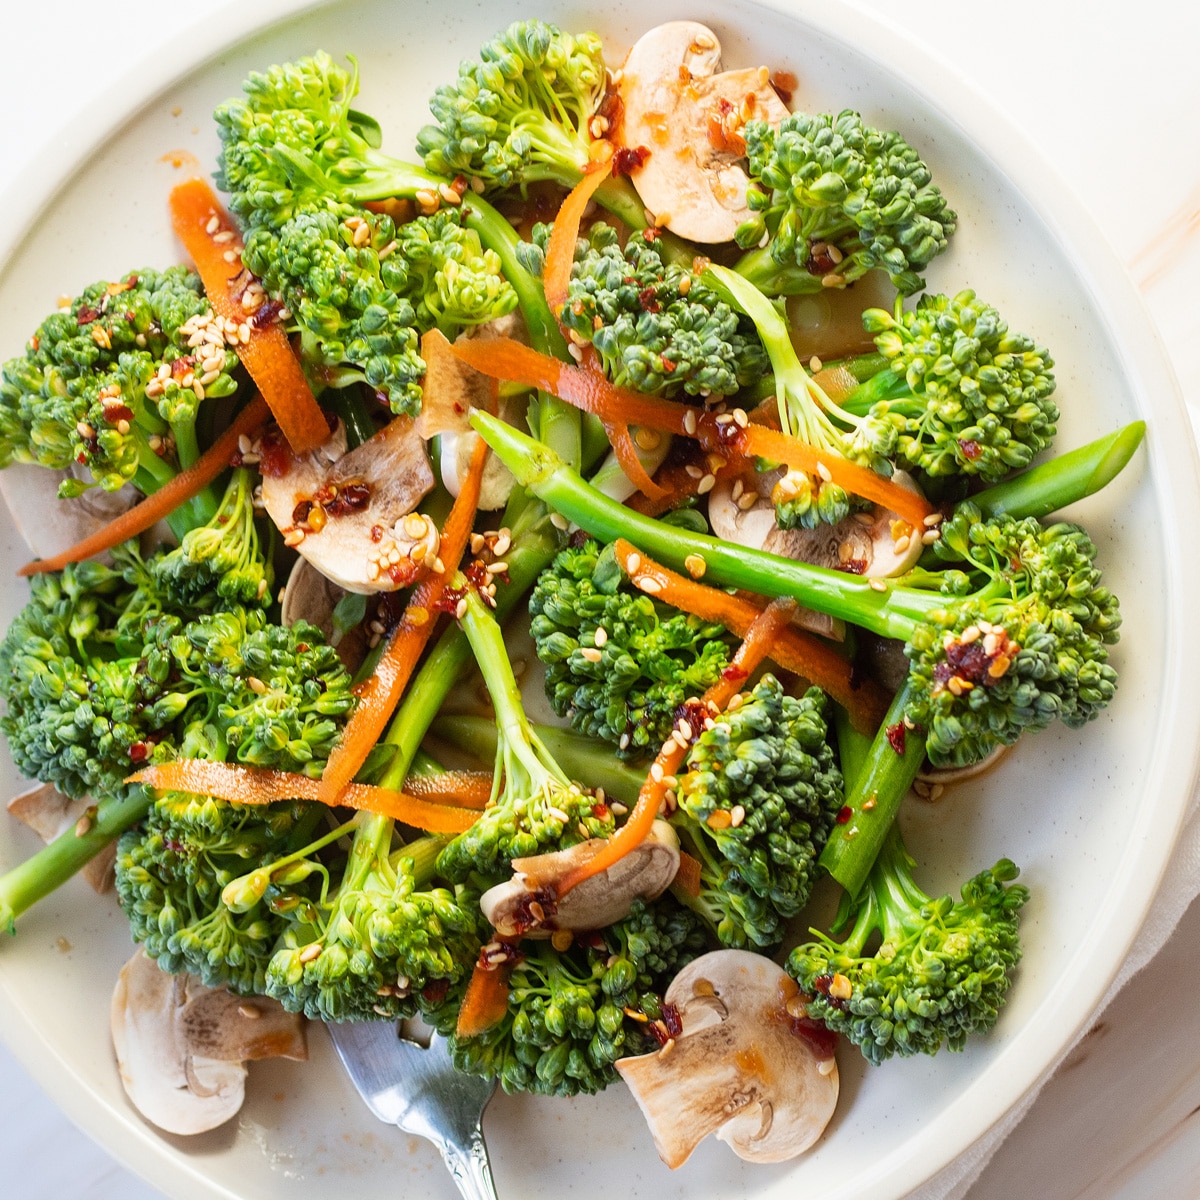 Salad brokoli di piring putih dengan jamur, wortel serut, dan saus Asia ringan.